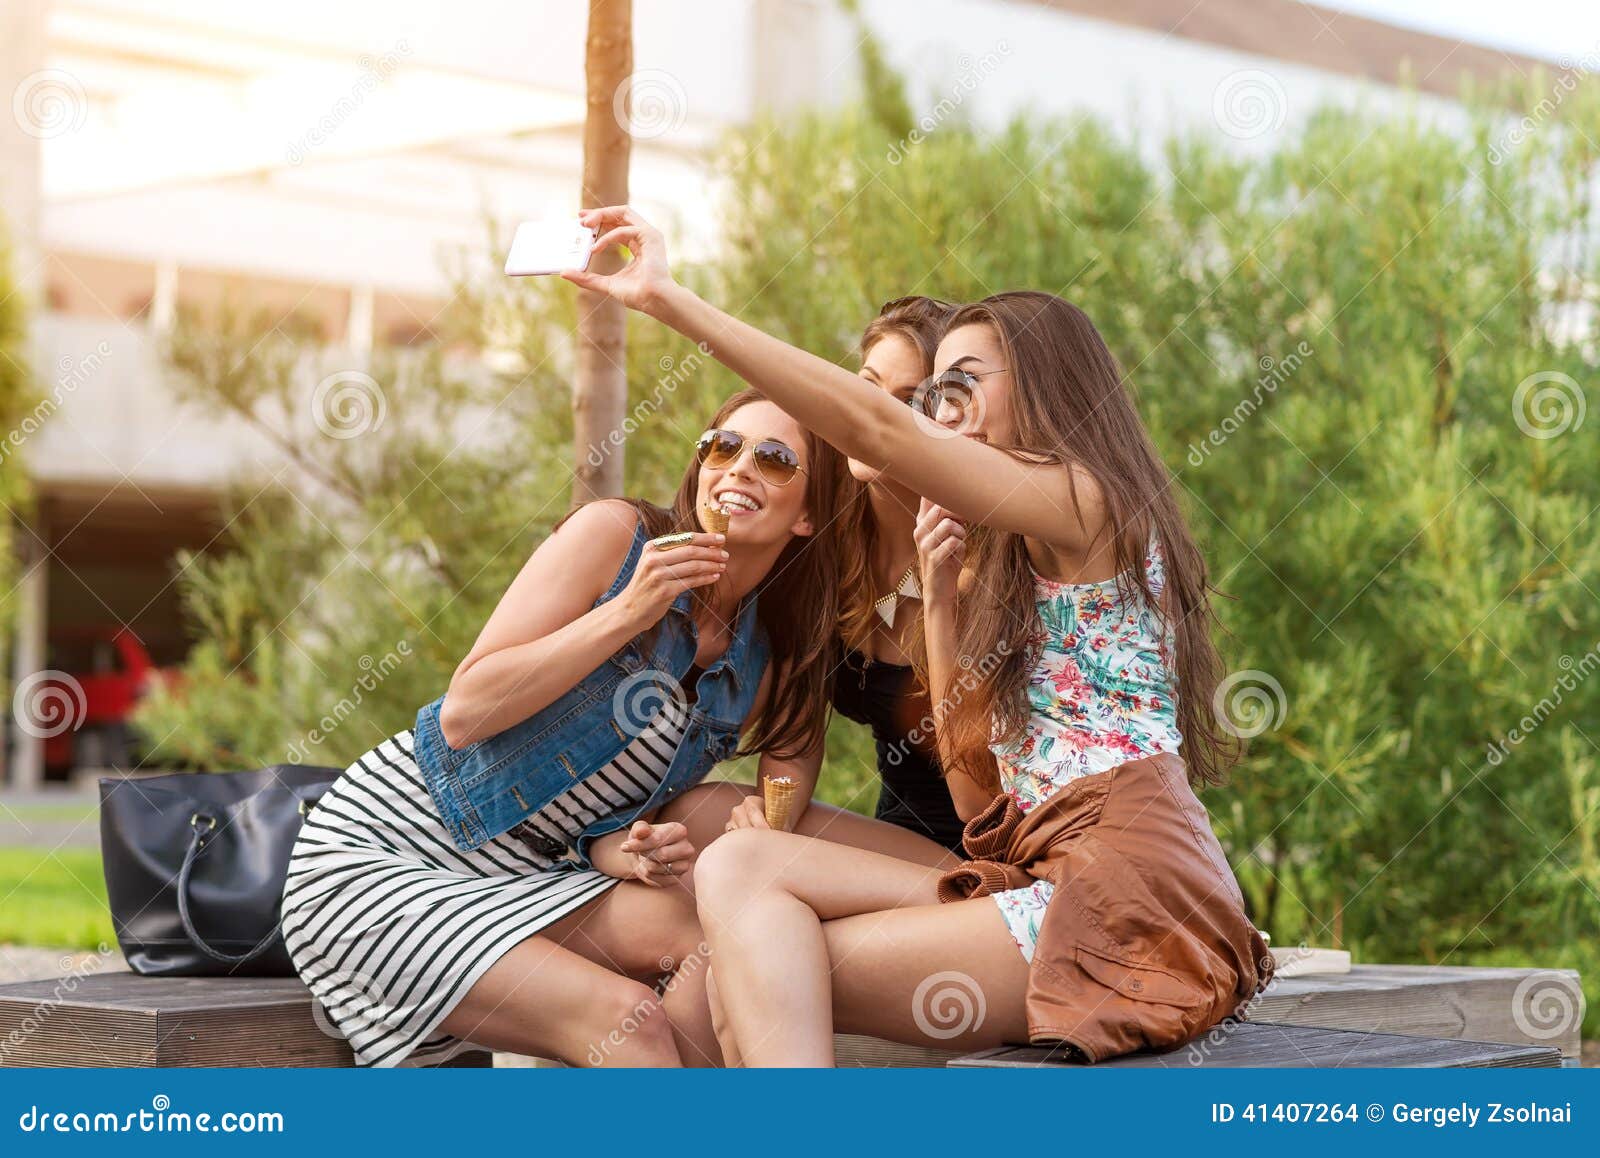 ice cream selfies